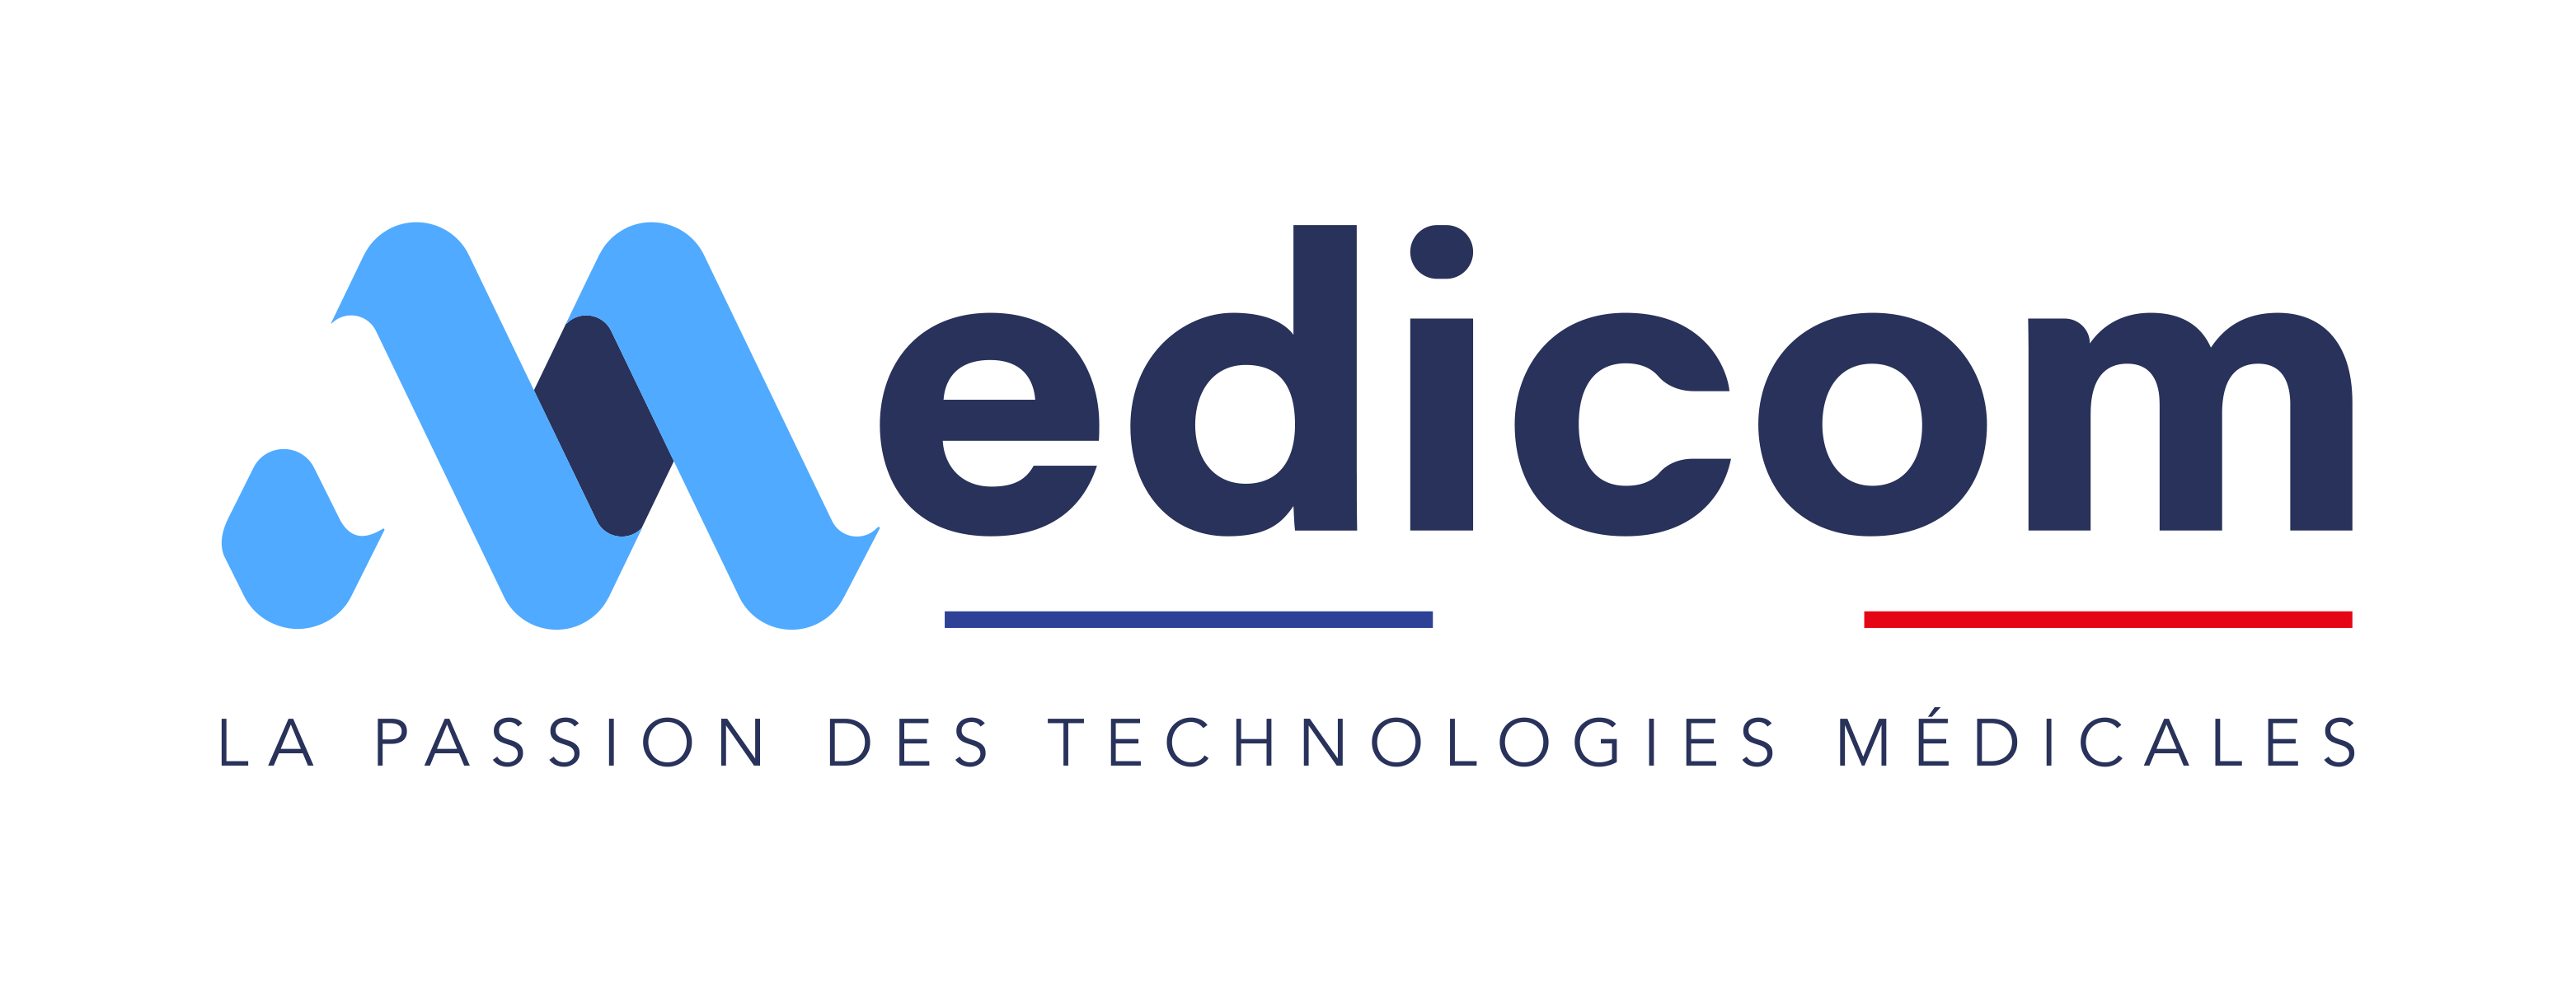 Medicom Logo